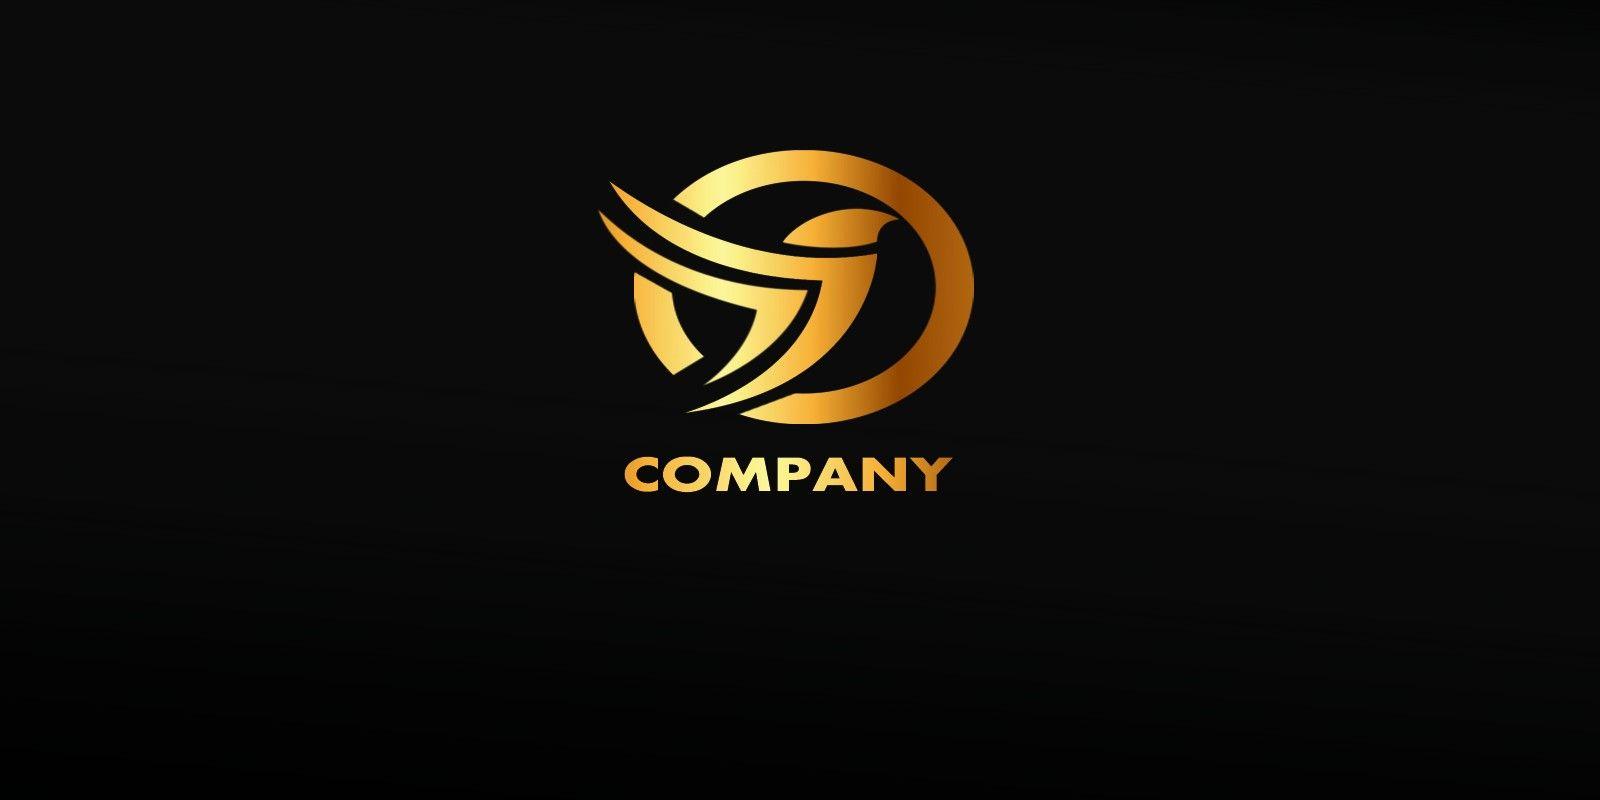 Gold Bird Company Logo - Golden Bird Logo